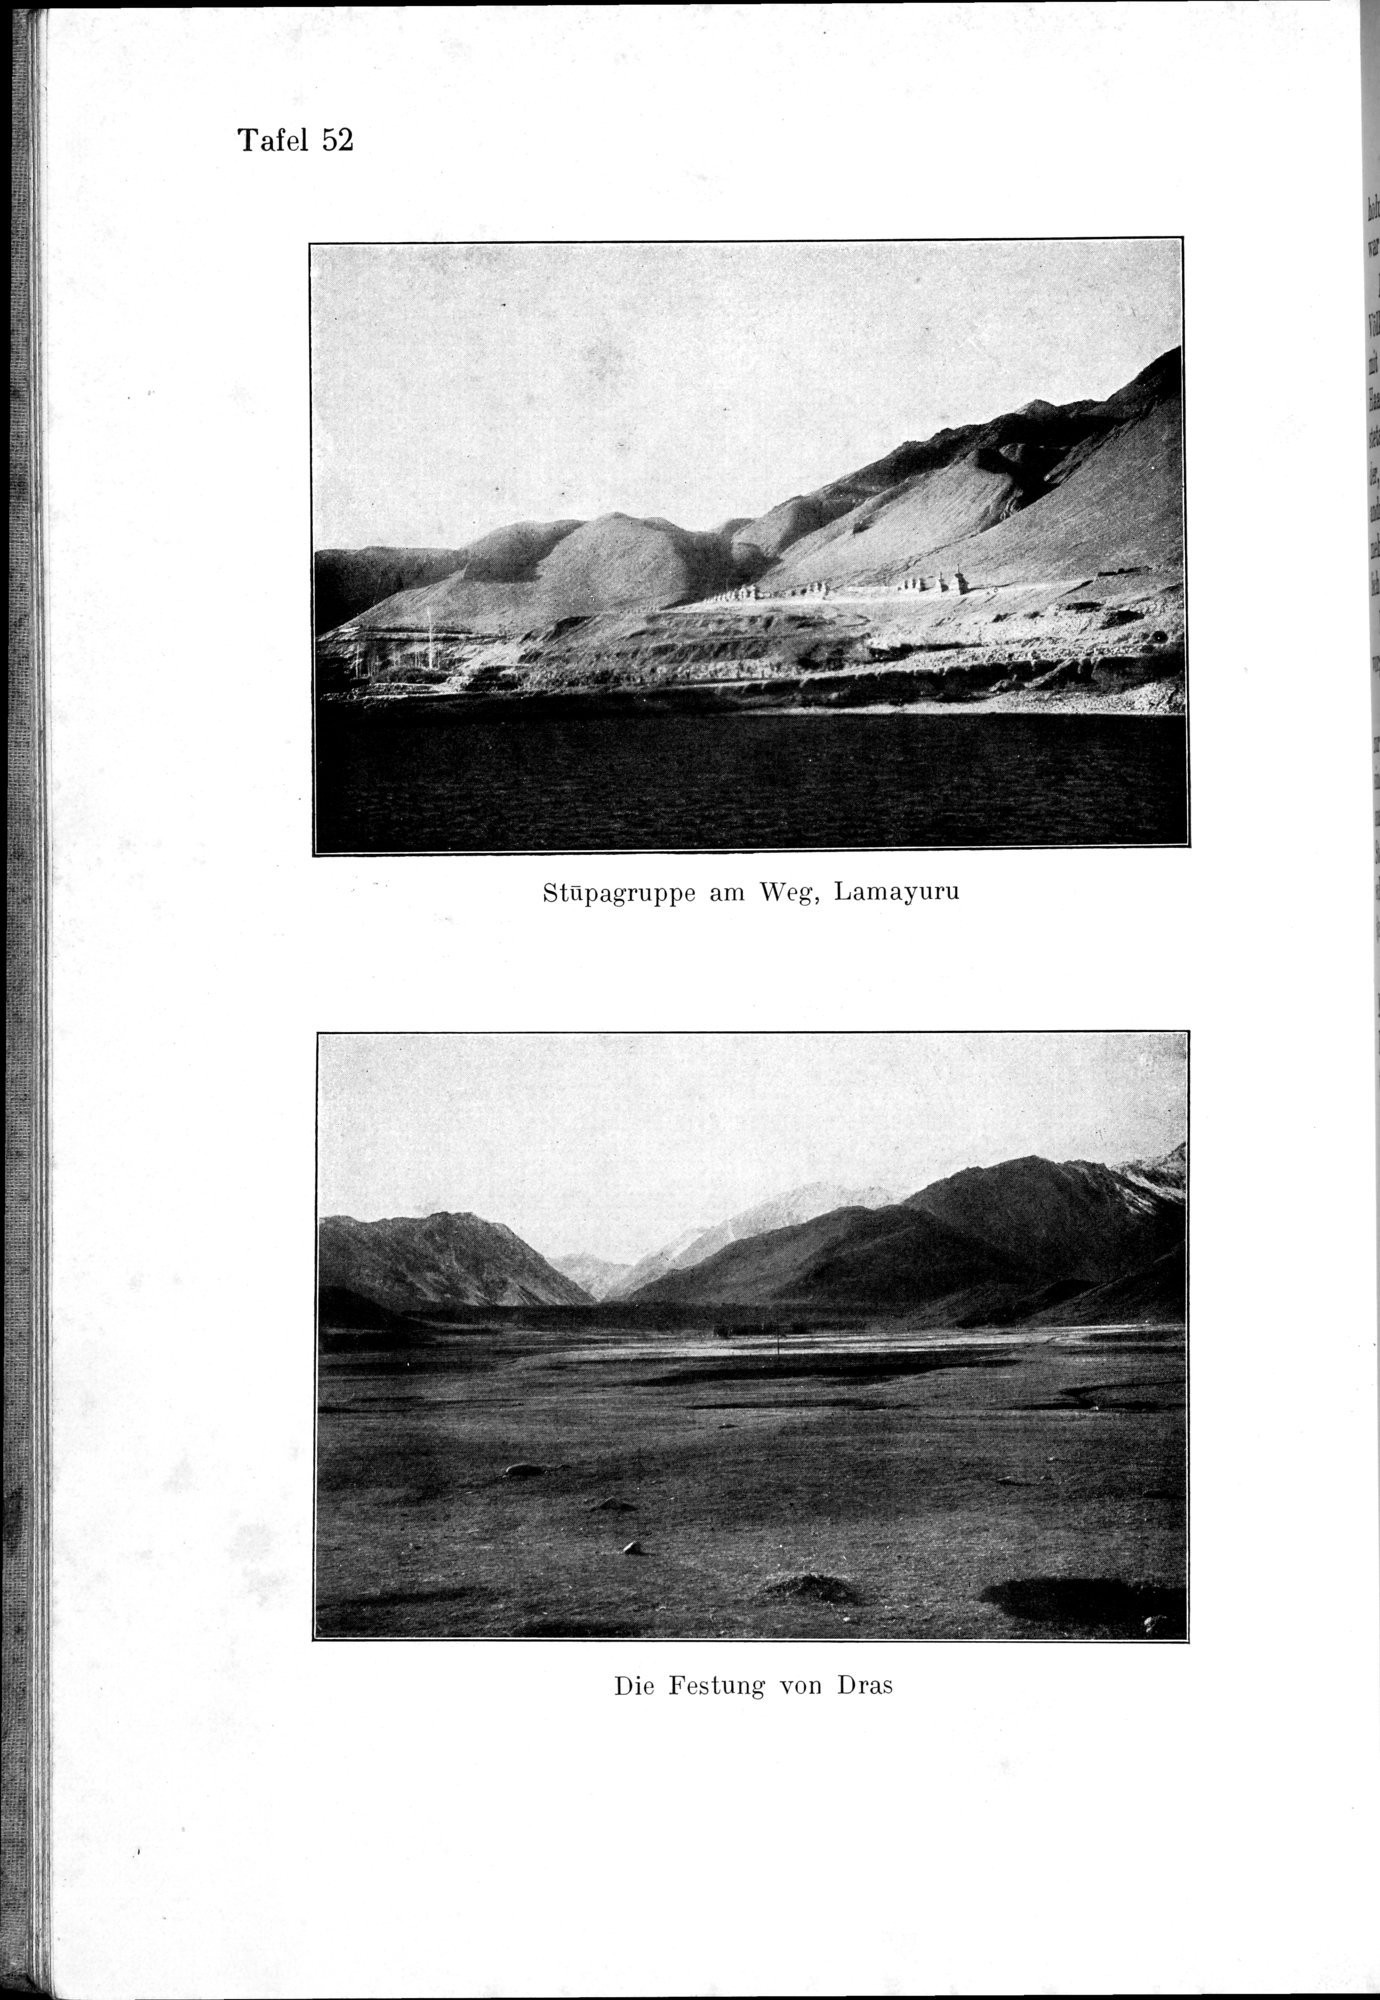 Auf Hellas Spuren in Ostturkistan : vol.1 / Page 220 (Grayscale High Resolution Image)